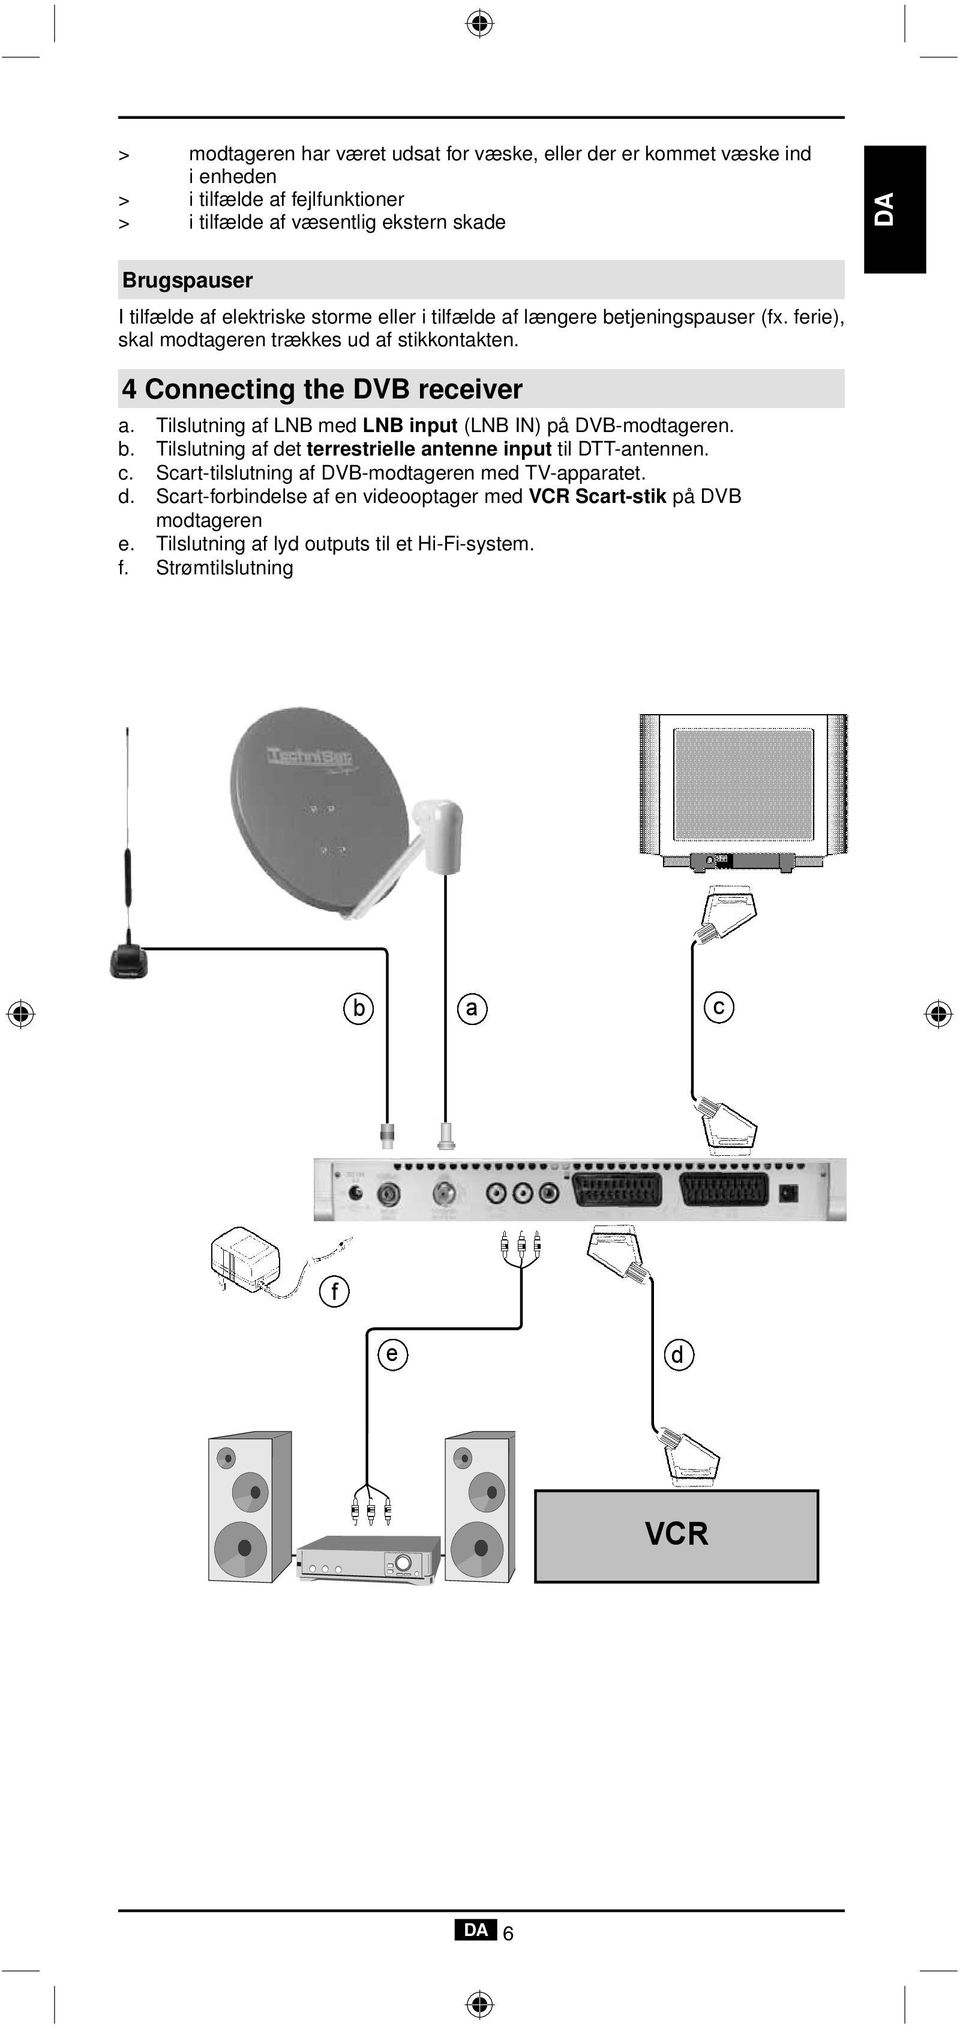 Tilslutning af LNB med LNB input (LNB IN) på DVB-modtageren. b. Tilslutning af det terrestrielle antenne input til DTT-antennen. c.